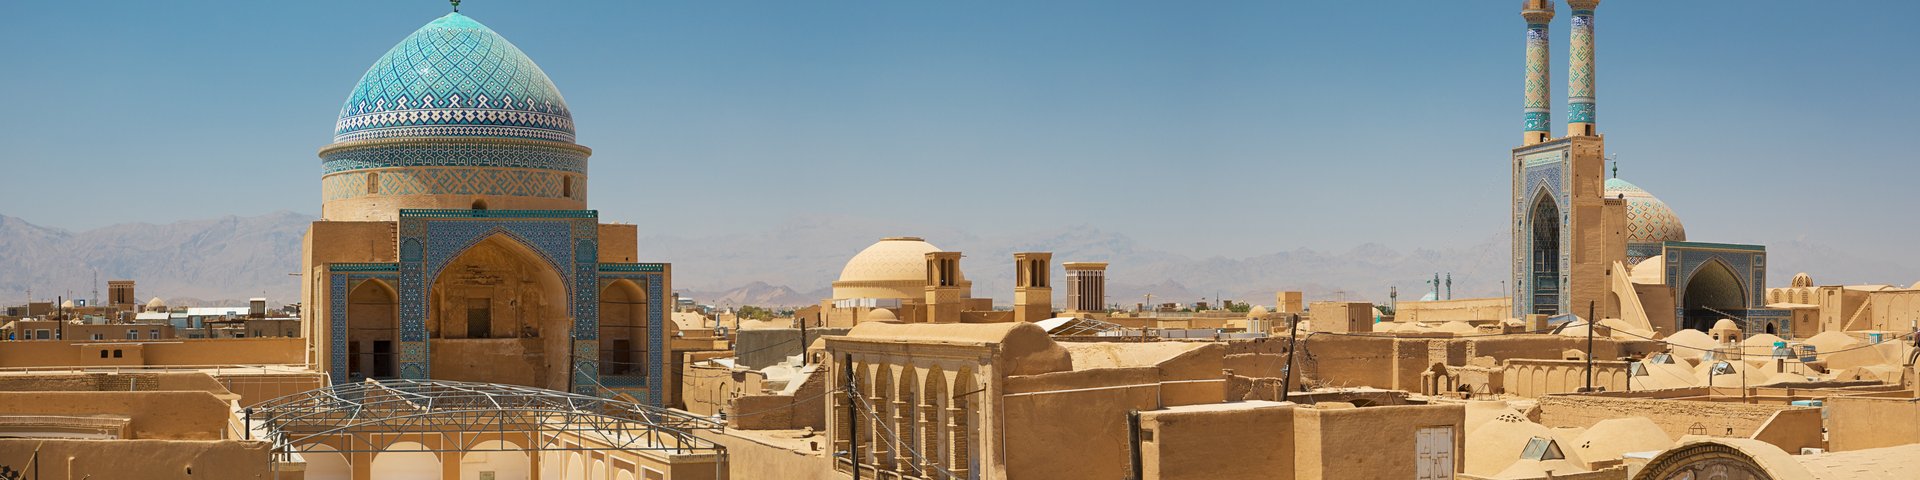 Blick auf über die Dächer von Yazd hin zur Moschee